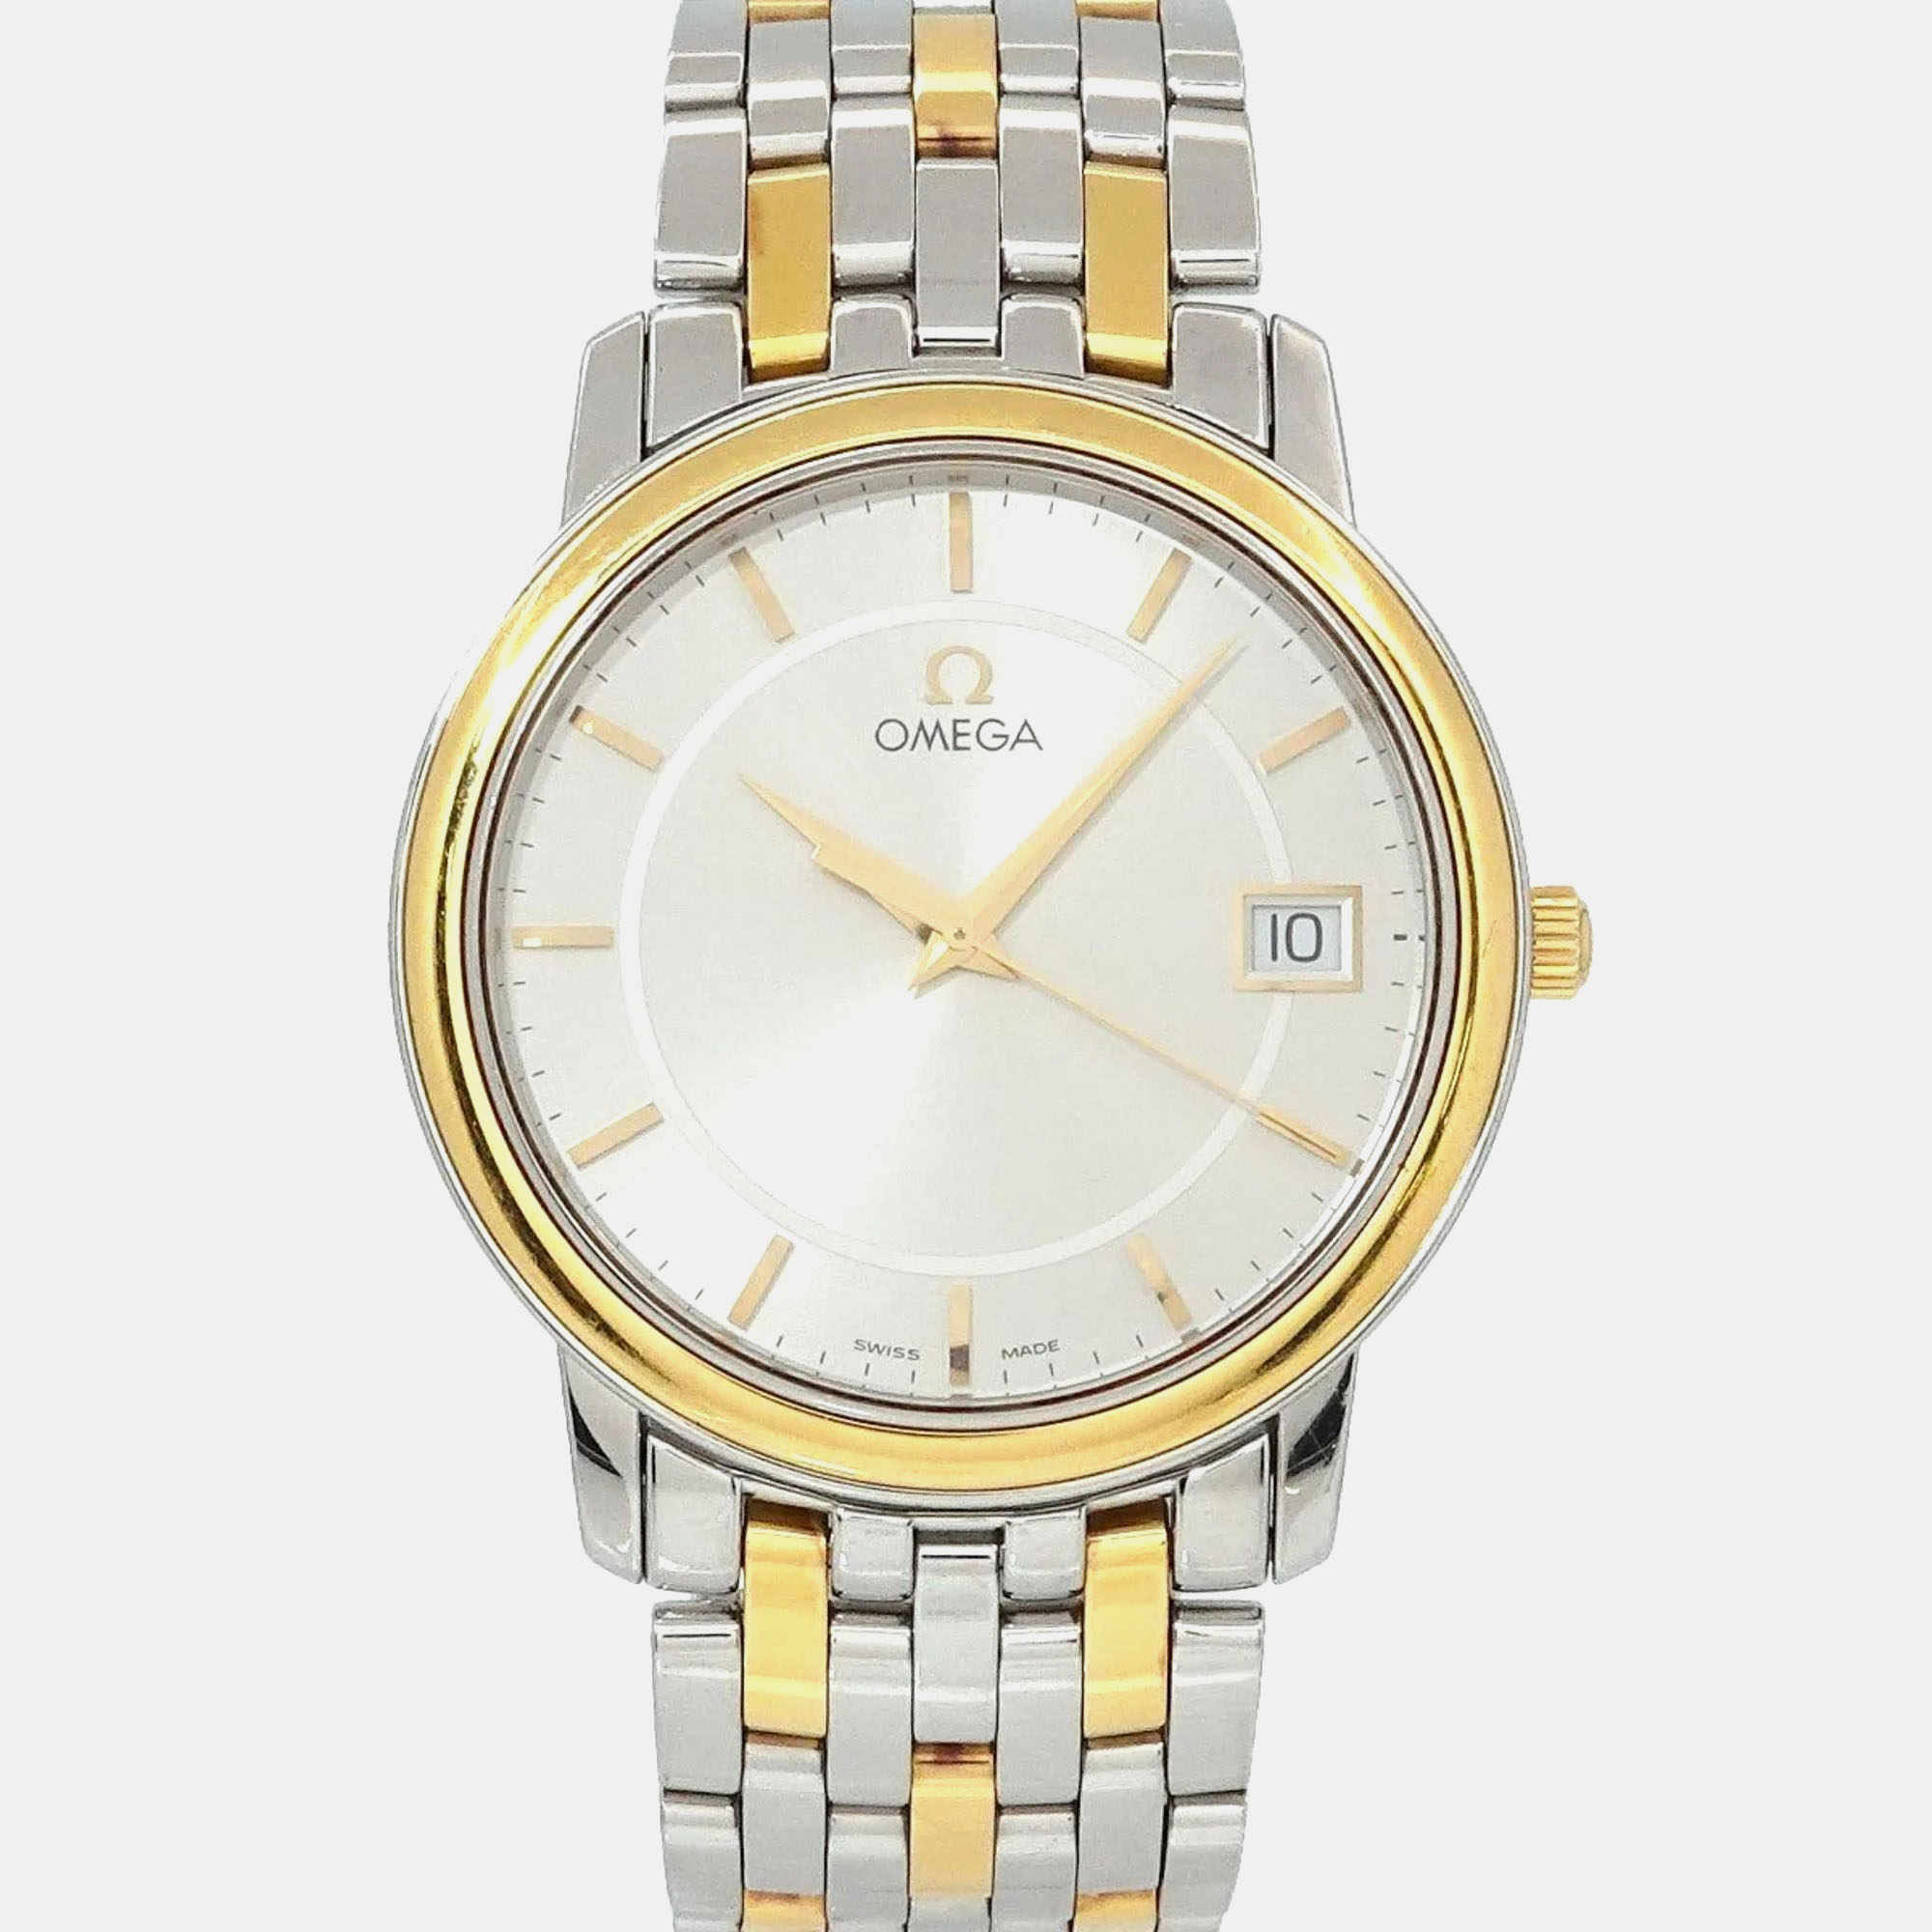 

Omega Silver Stainless Steel De Ville Prestige 4310.31.00 Automatic Men's Wristwatch 34 mm